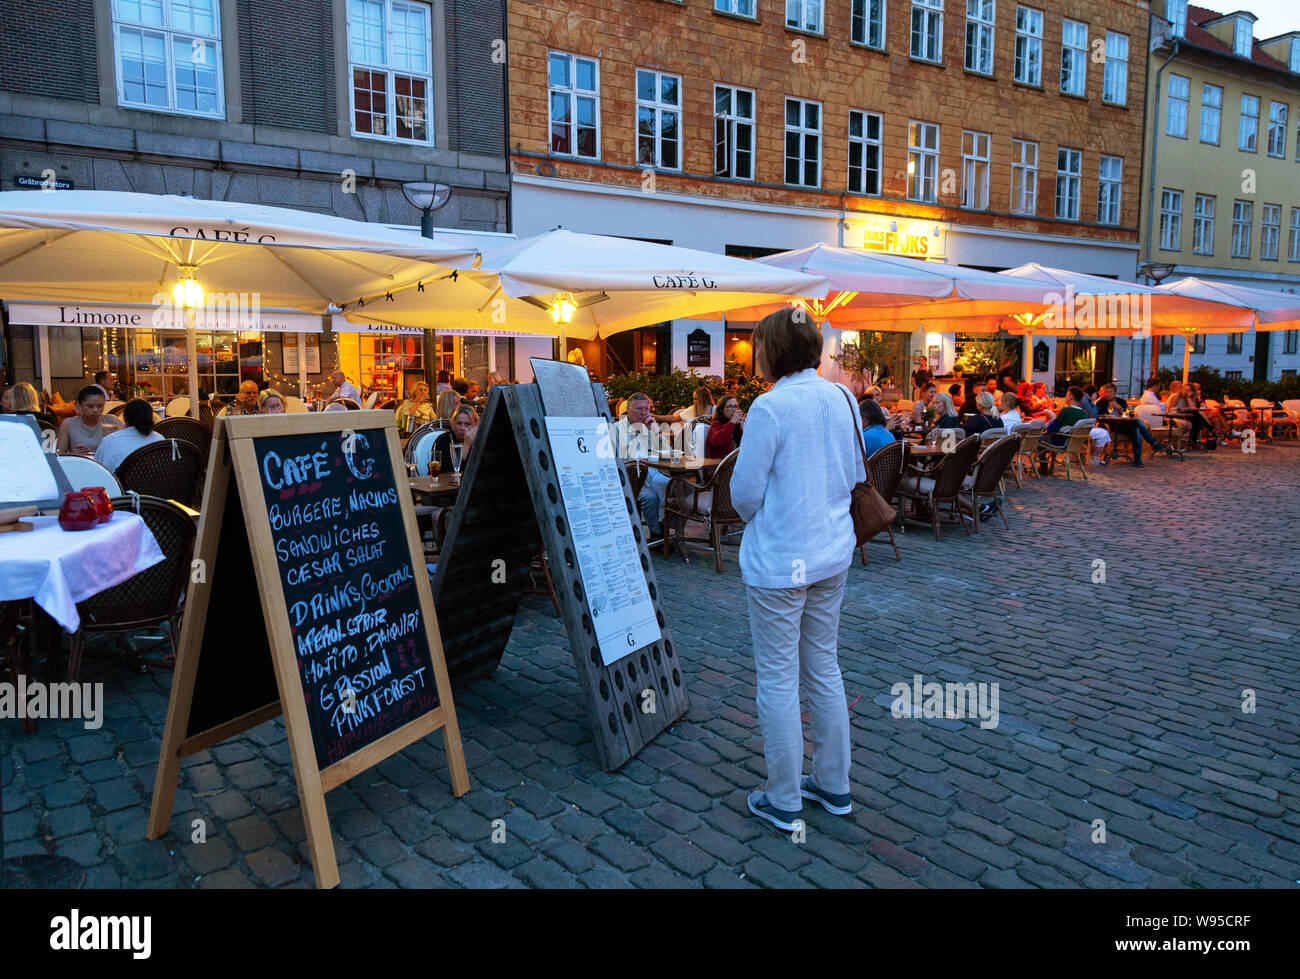 Restaurante de Copenhague; una mujer mirando el menú, en una noche de verano, cafetería, restaurante, Gråbrødretorv G, el Barrio Latino, Copenhague, Dinamarca Escandinavia Foto de stock